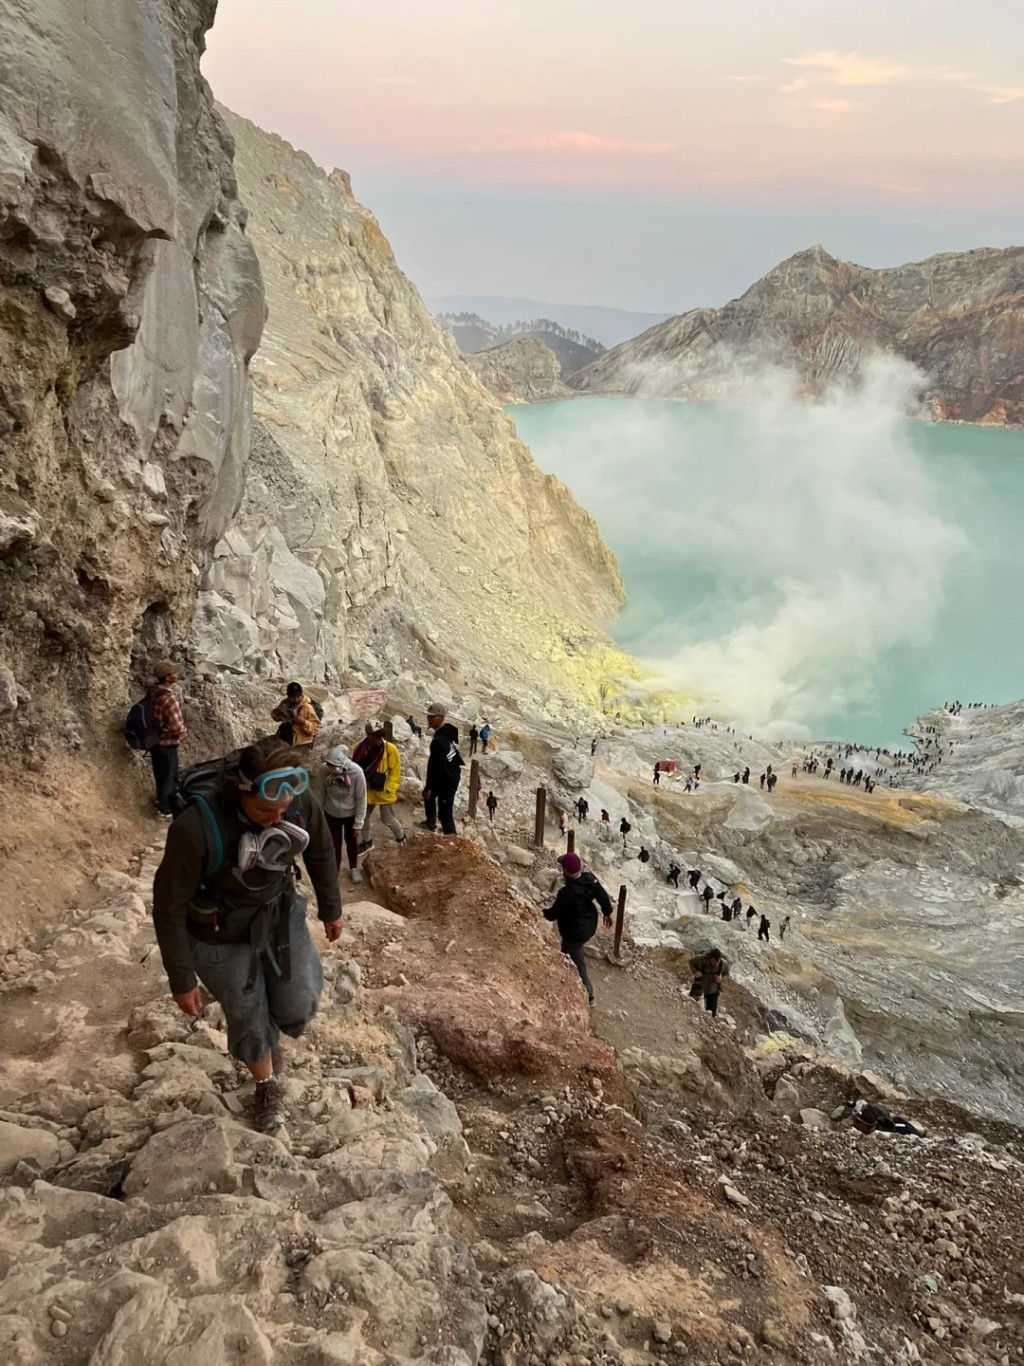 印尼「伊真火山」吸引全球各地游客。小红书